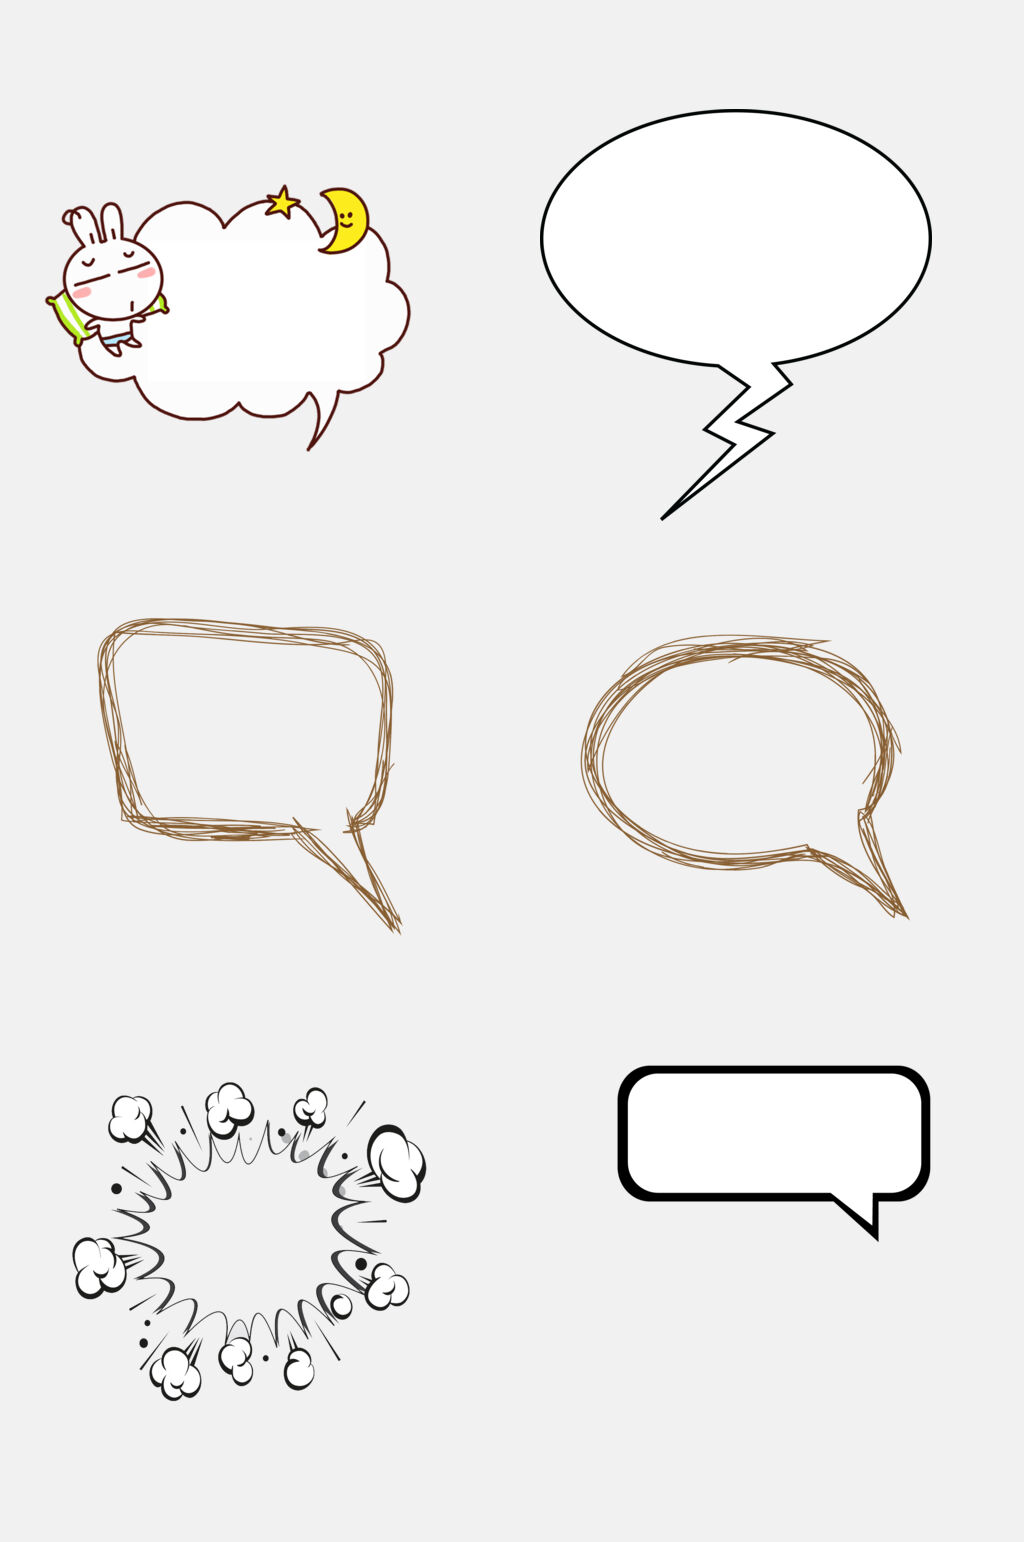 微信空白对话框图片图片